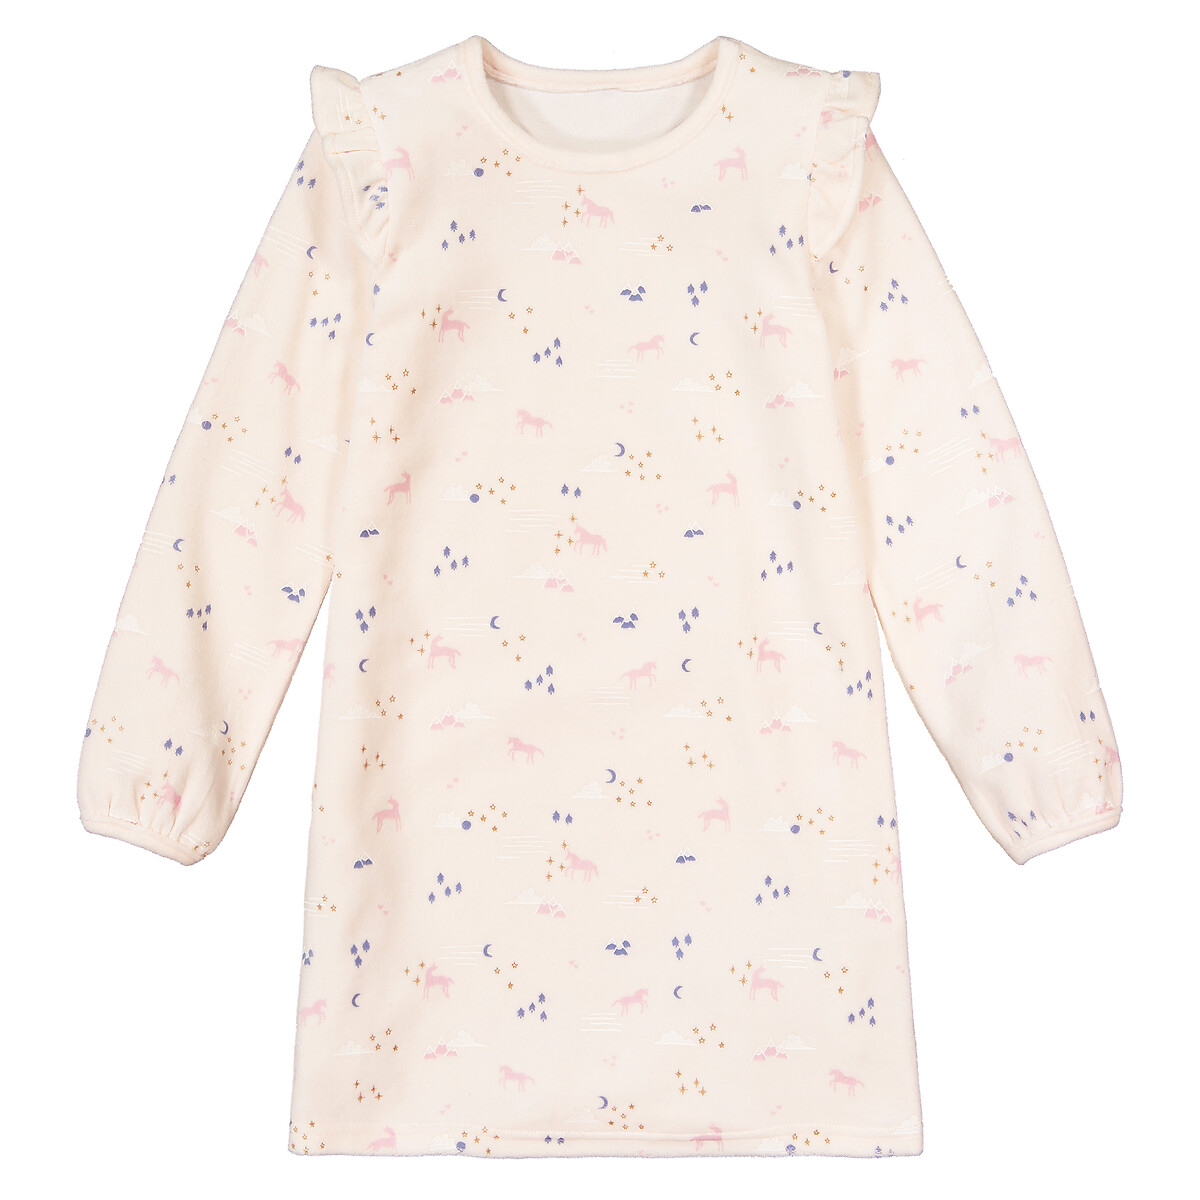 Ночная LaRedoute Рубашка из велюра биохлопок 3-12 лет 4 года - 102 см розовый, размер 4 года - 102 см